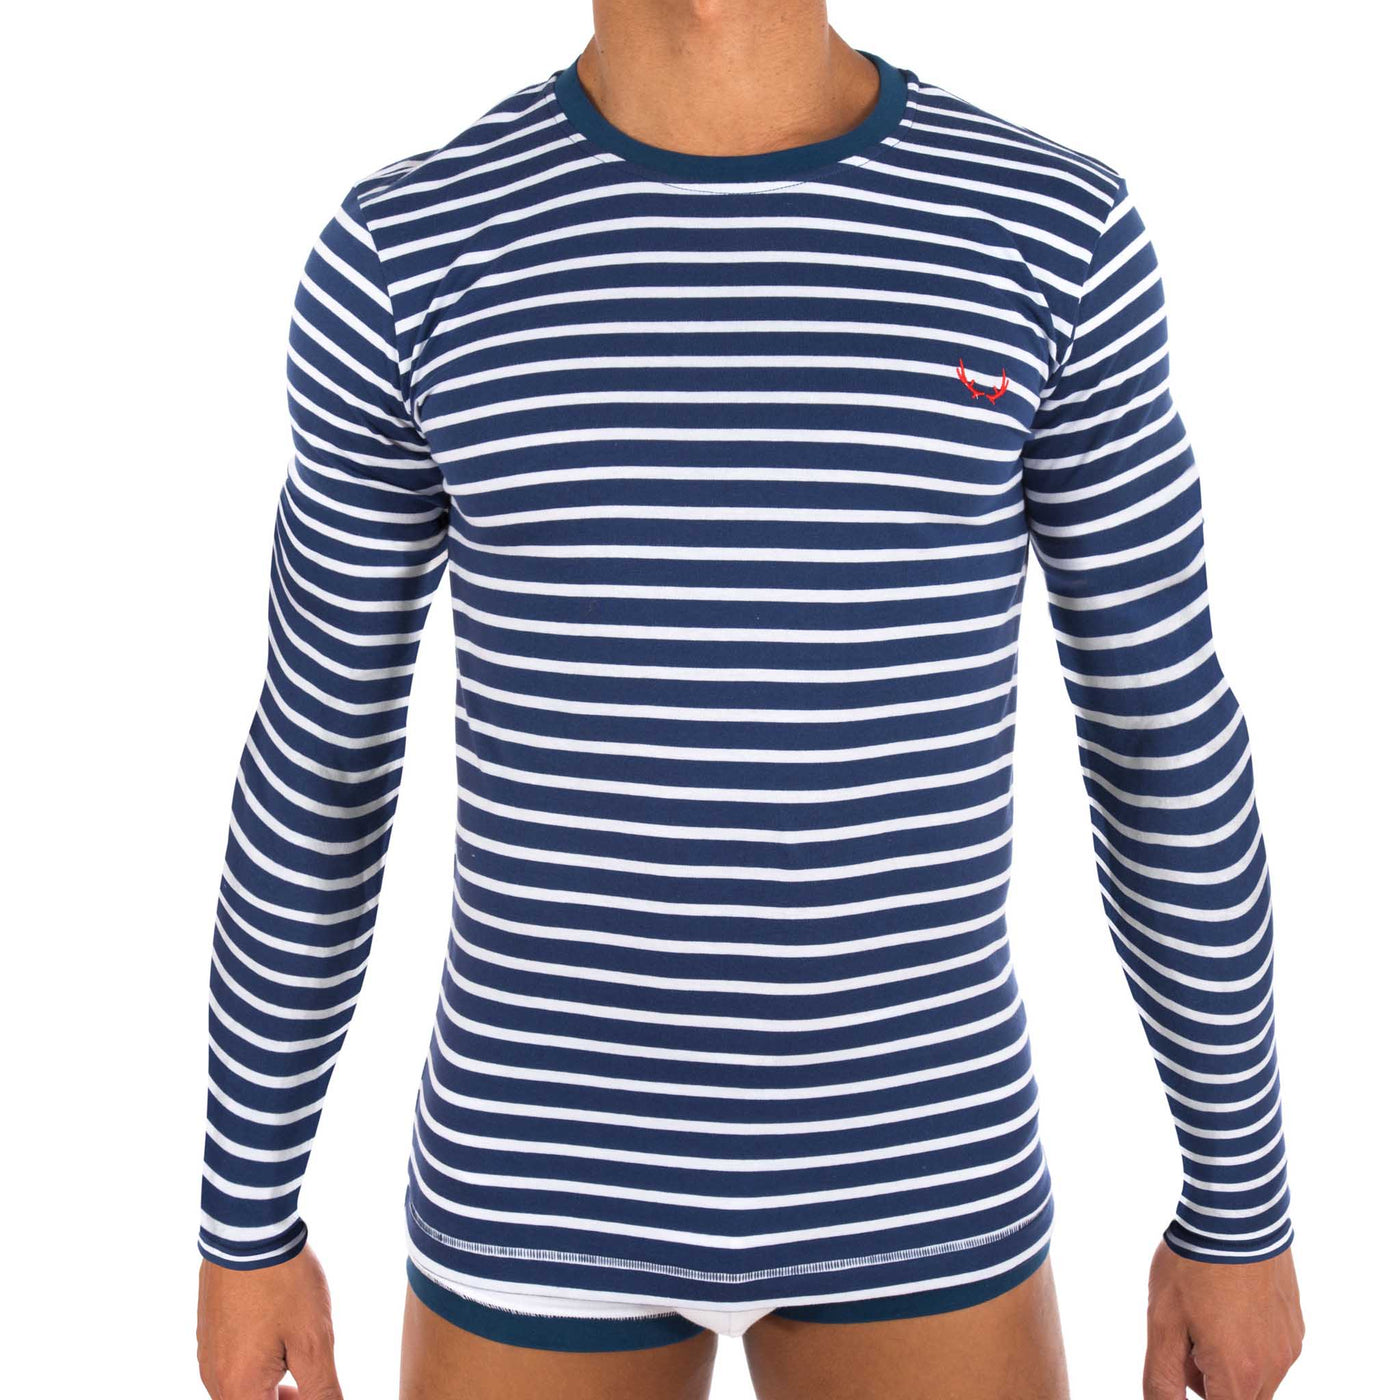 T-shirt homme marinière bleu marine en coton bio - manches longues